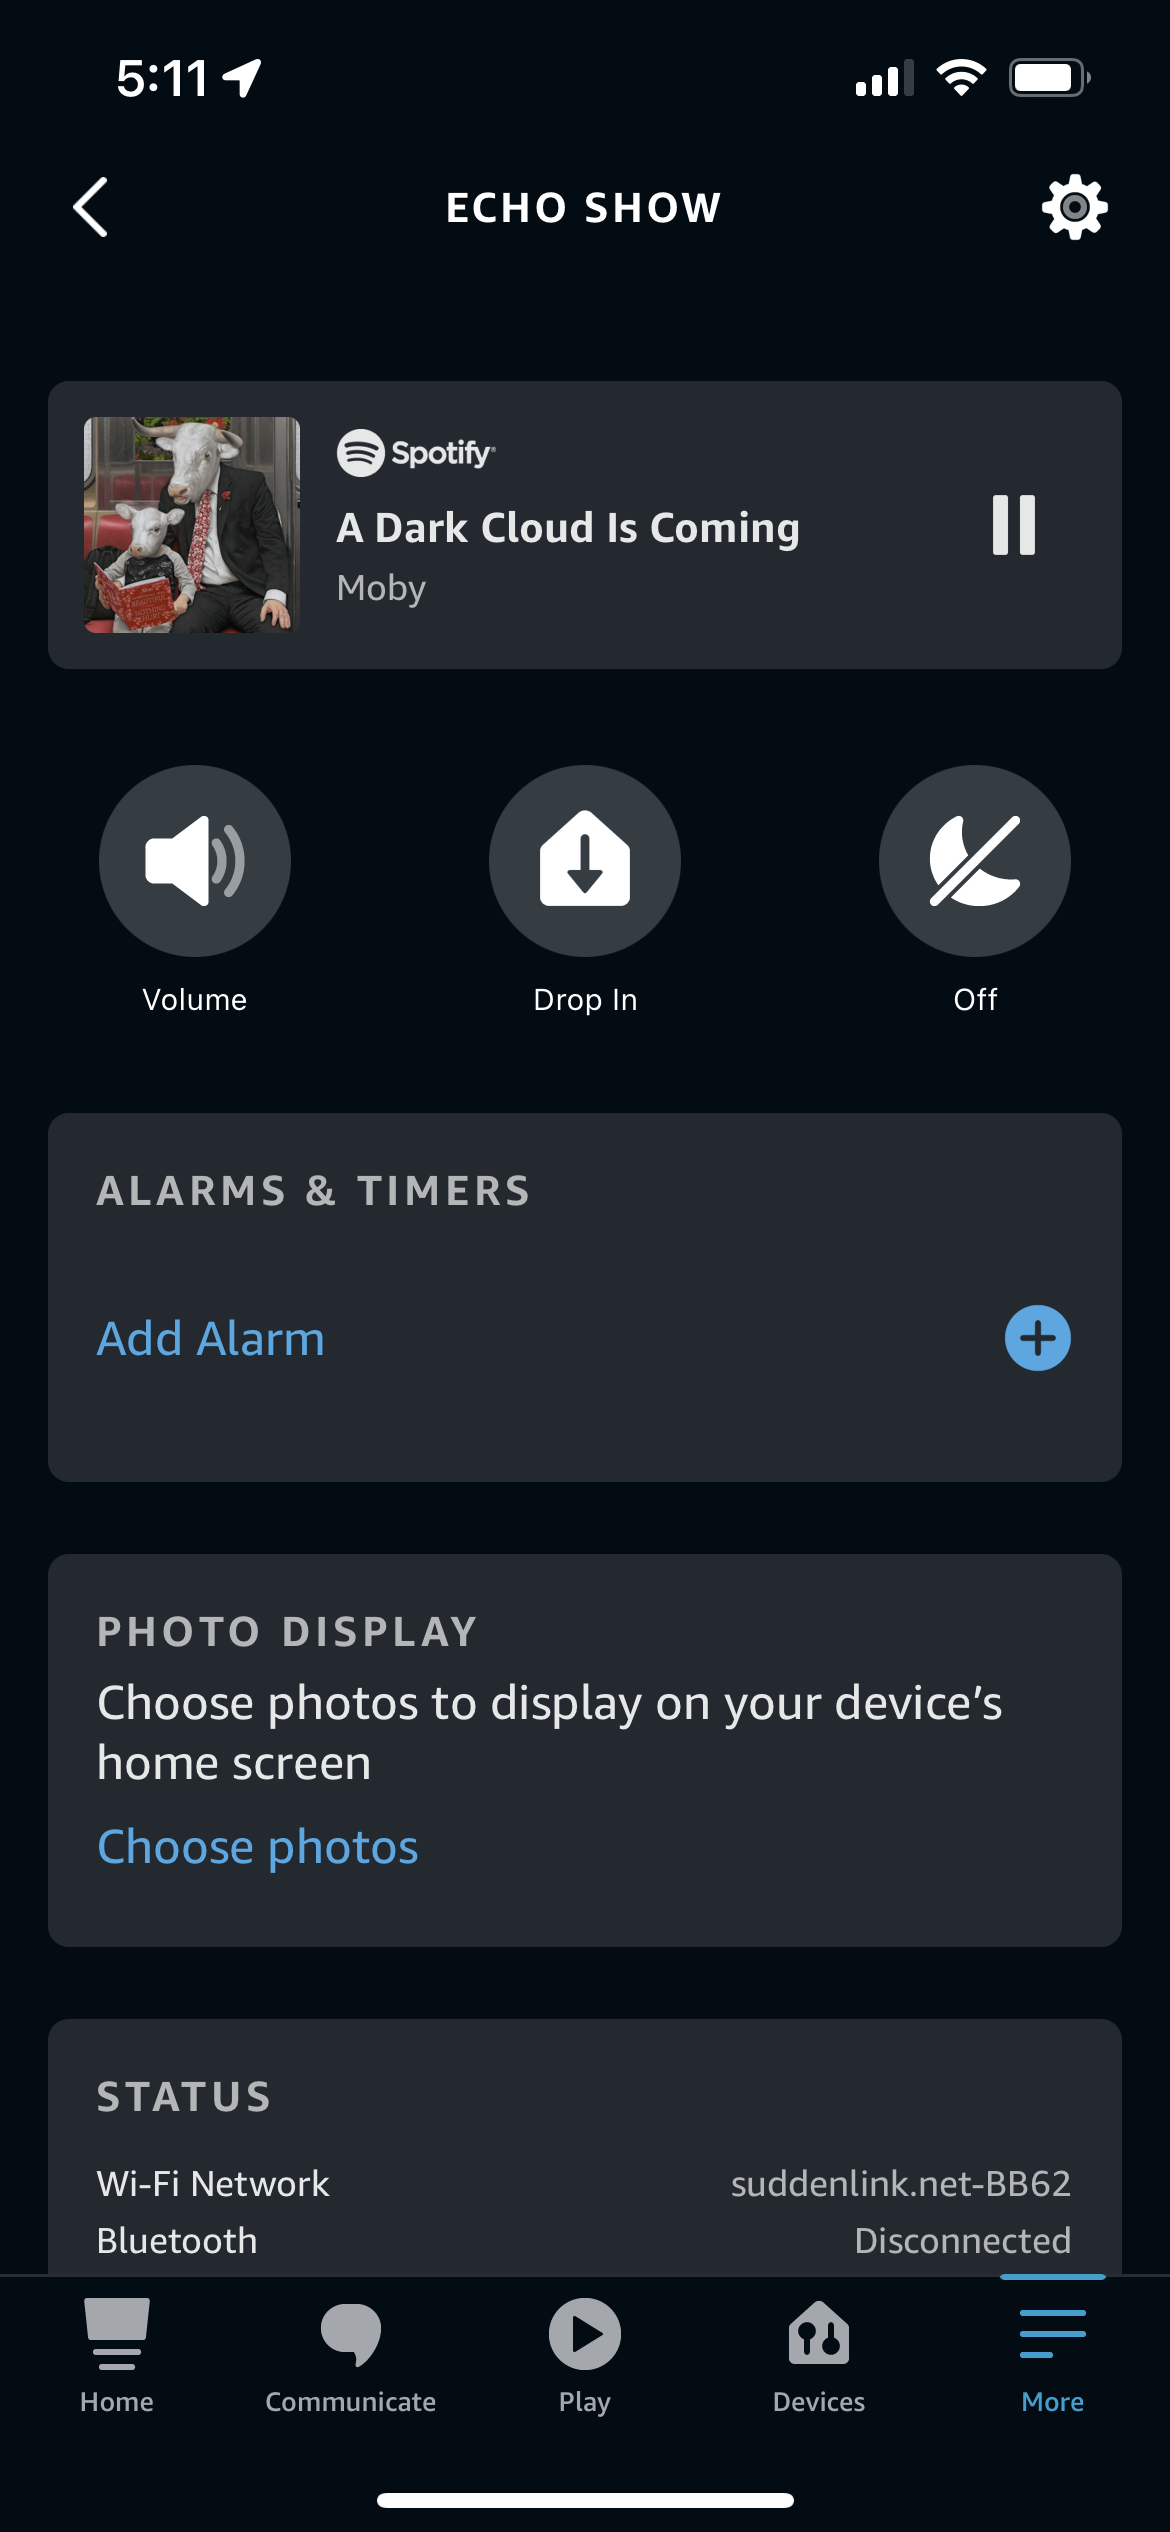 La page de l'appareil pour un Echo Show dans l'application Alexa